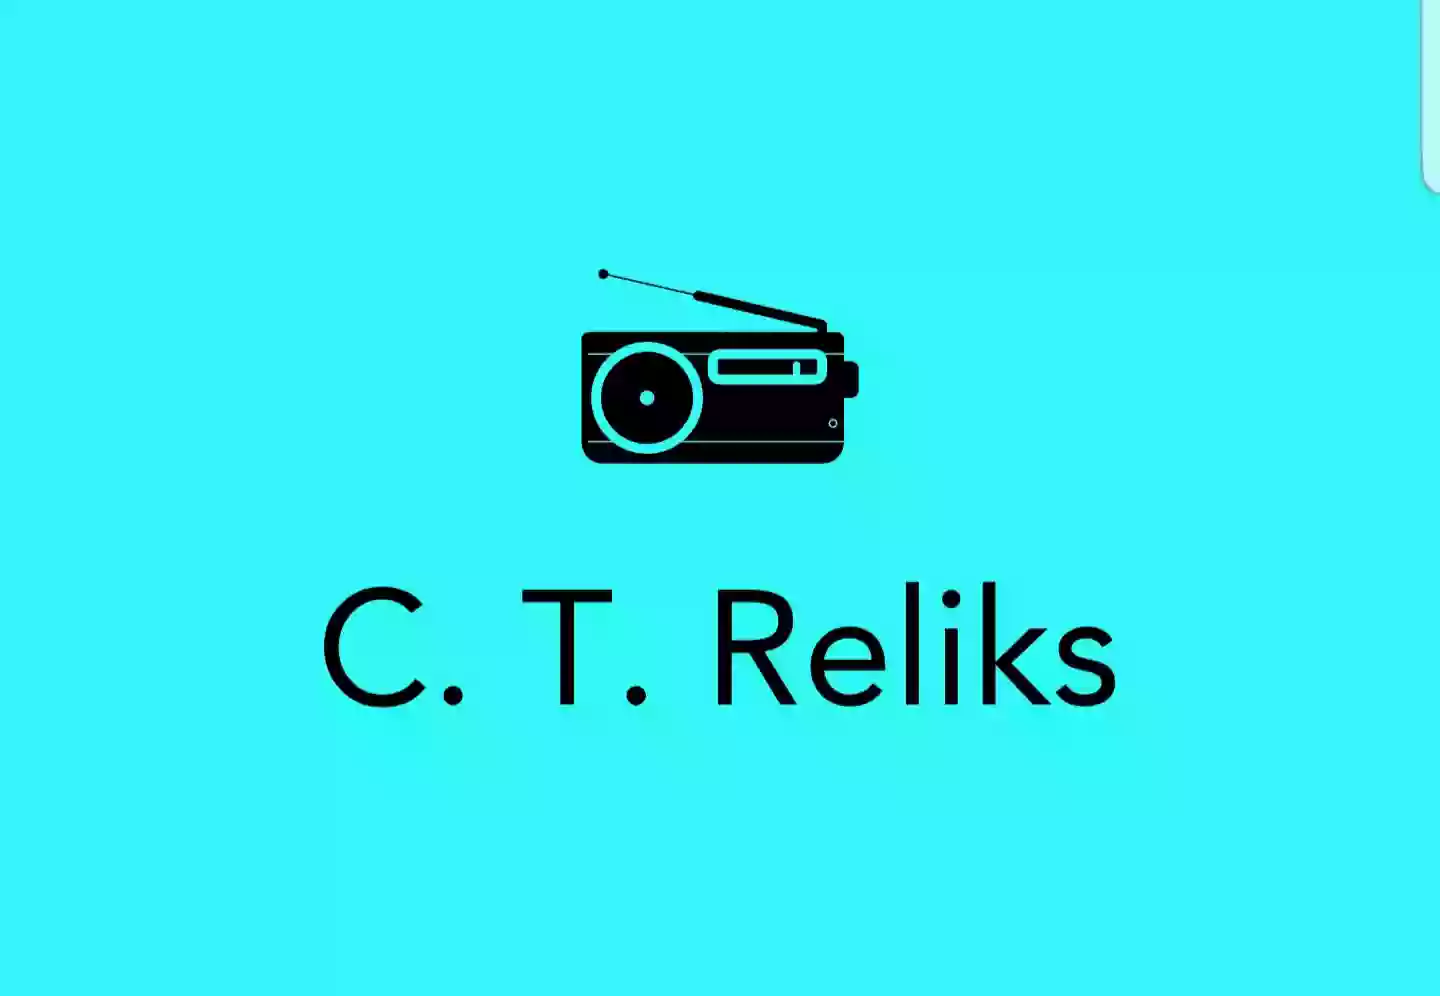 C. T. Reliks